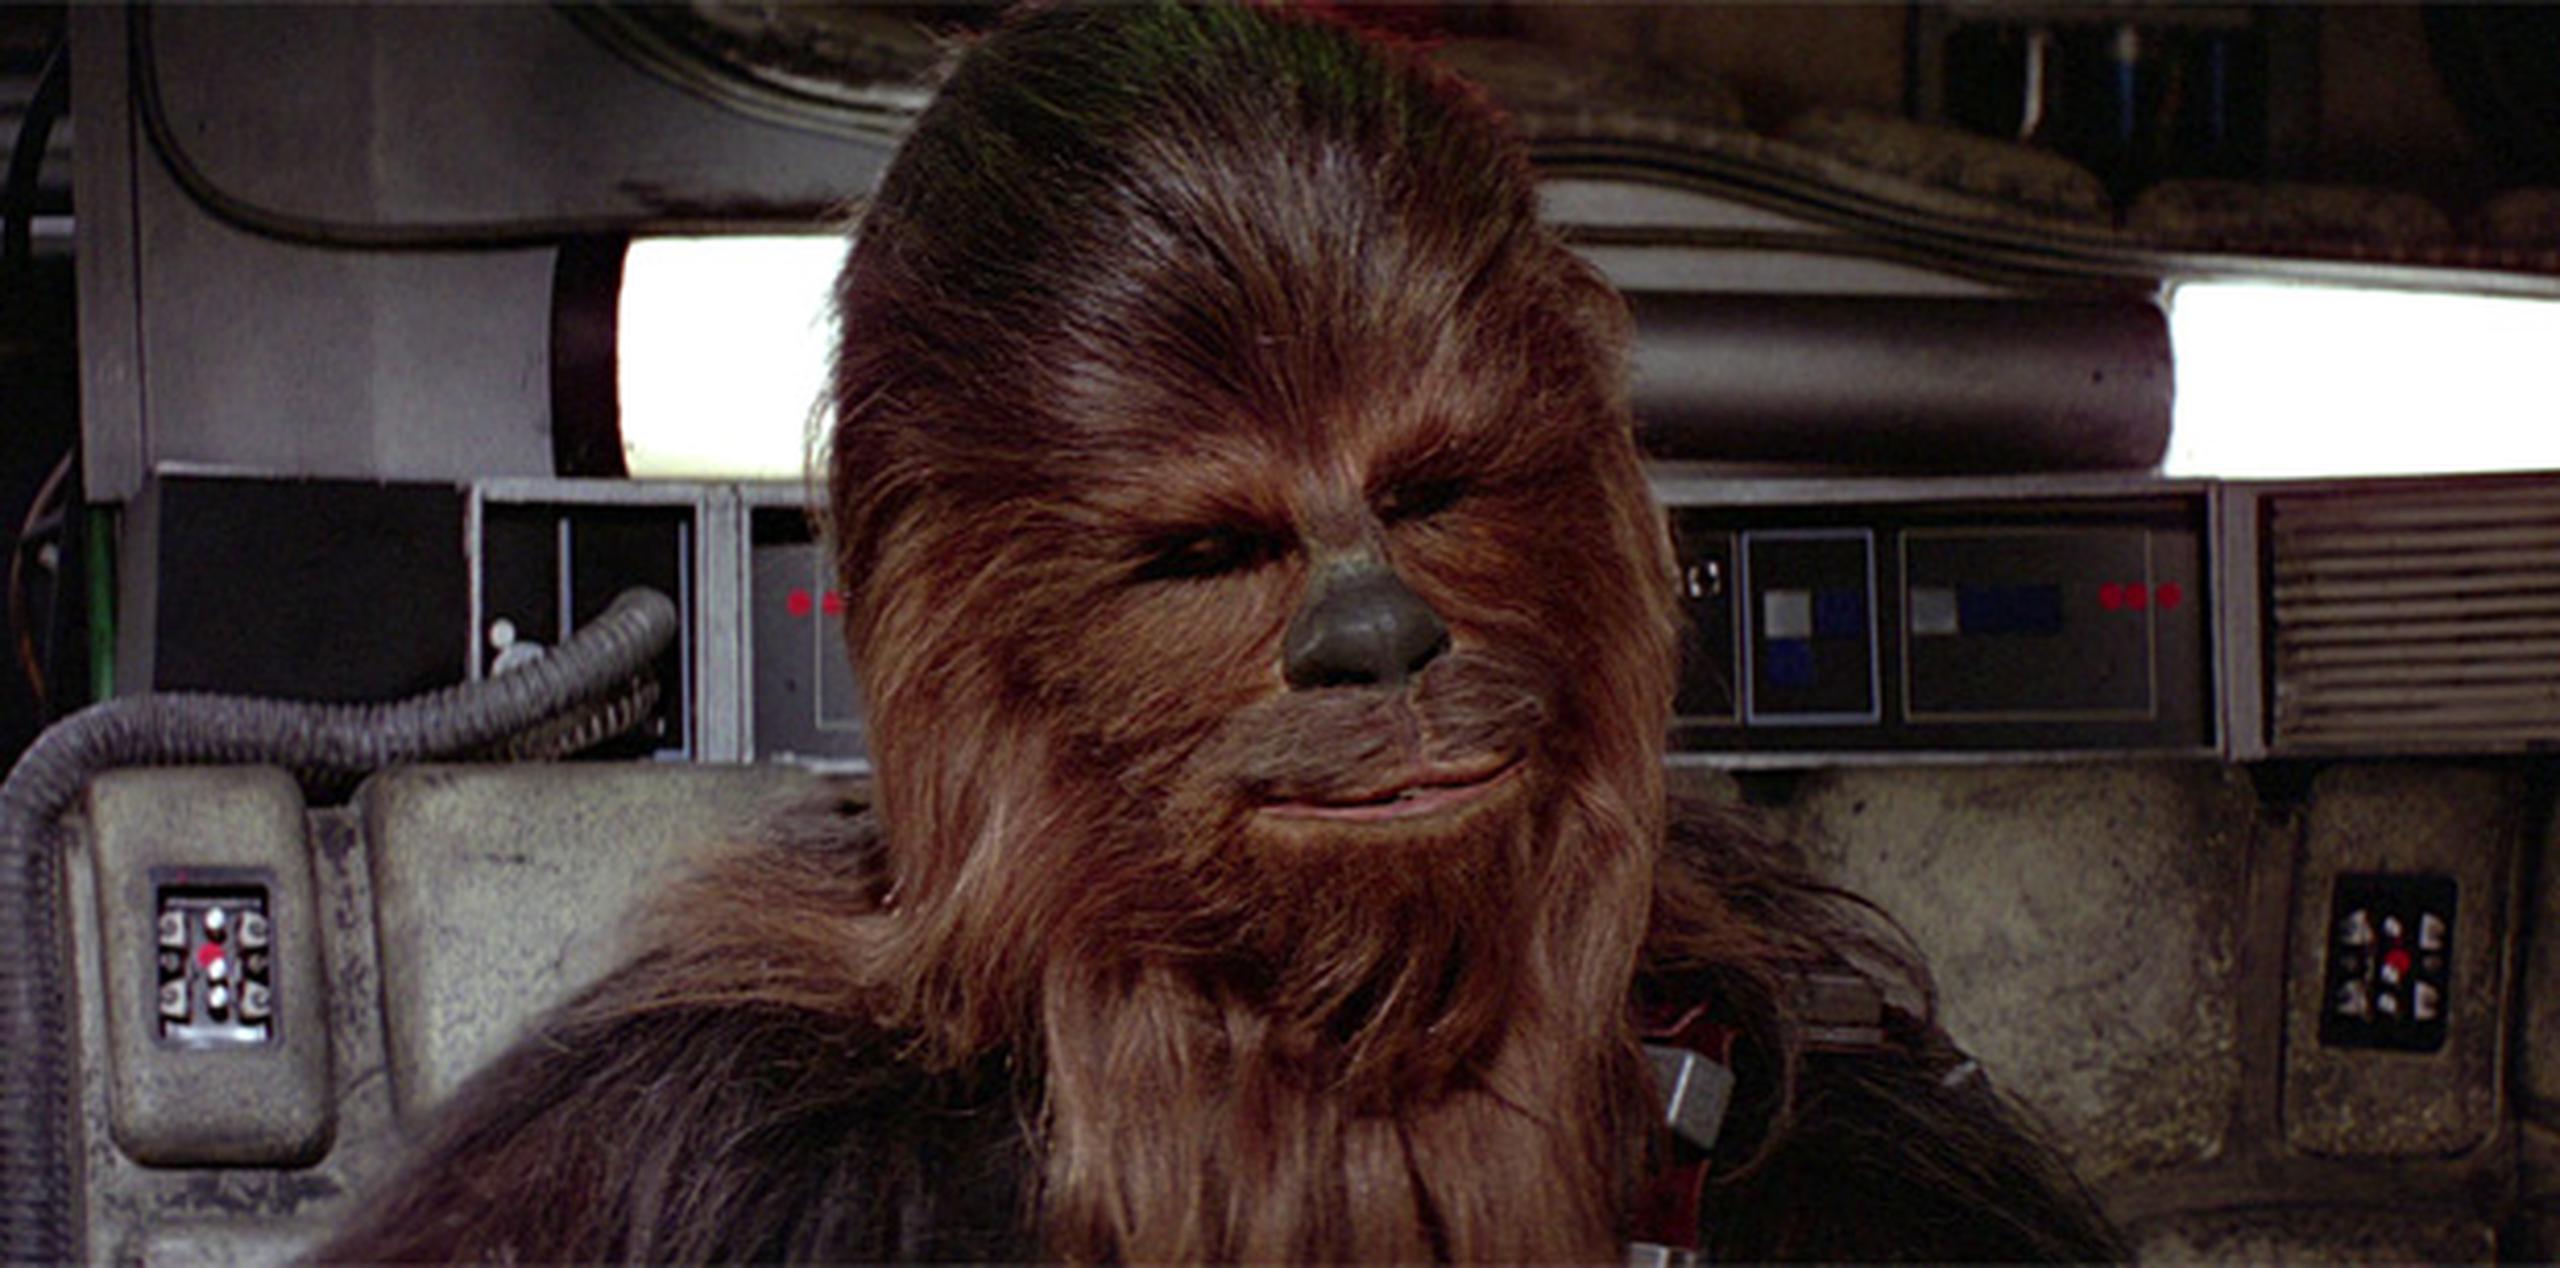 Peter Mayhew, de 69 años, encarnó al peludo copiloto de Han Solo en la trilogía que empezó en 1977 y repitió como Chewbacca en la precuela "Revenge of the Sith" (2005).